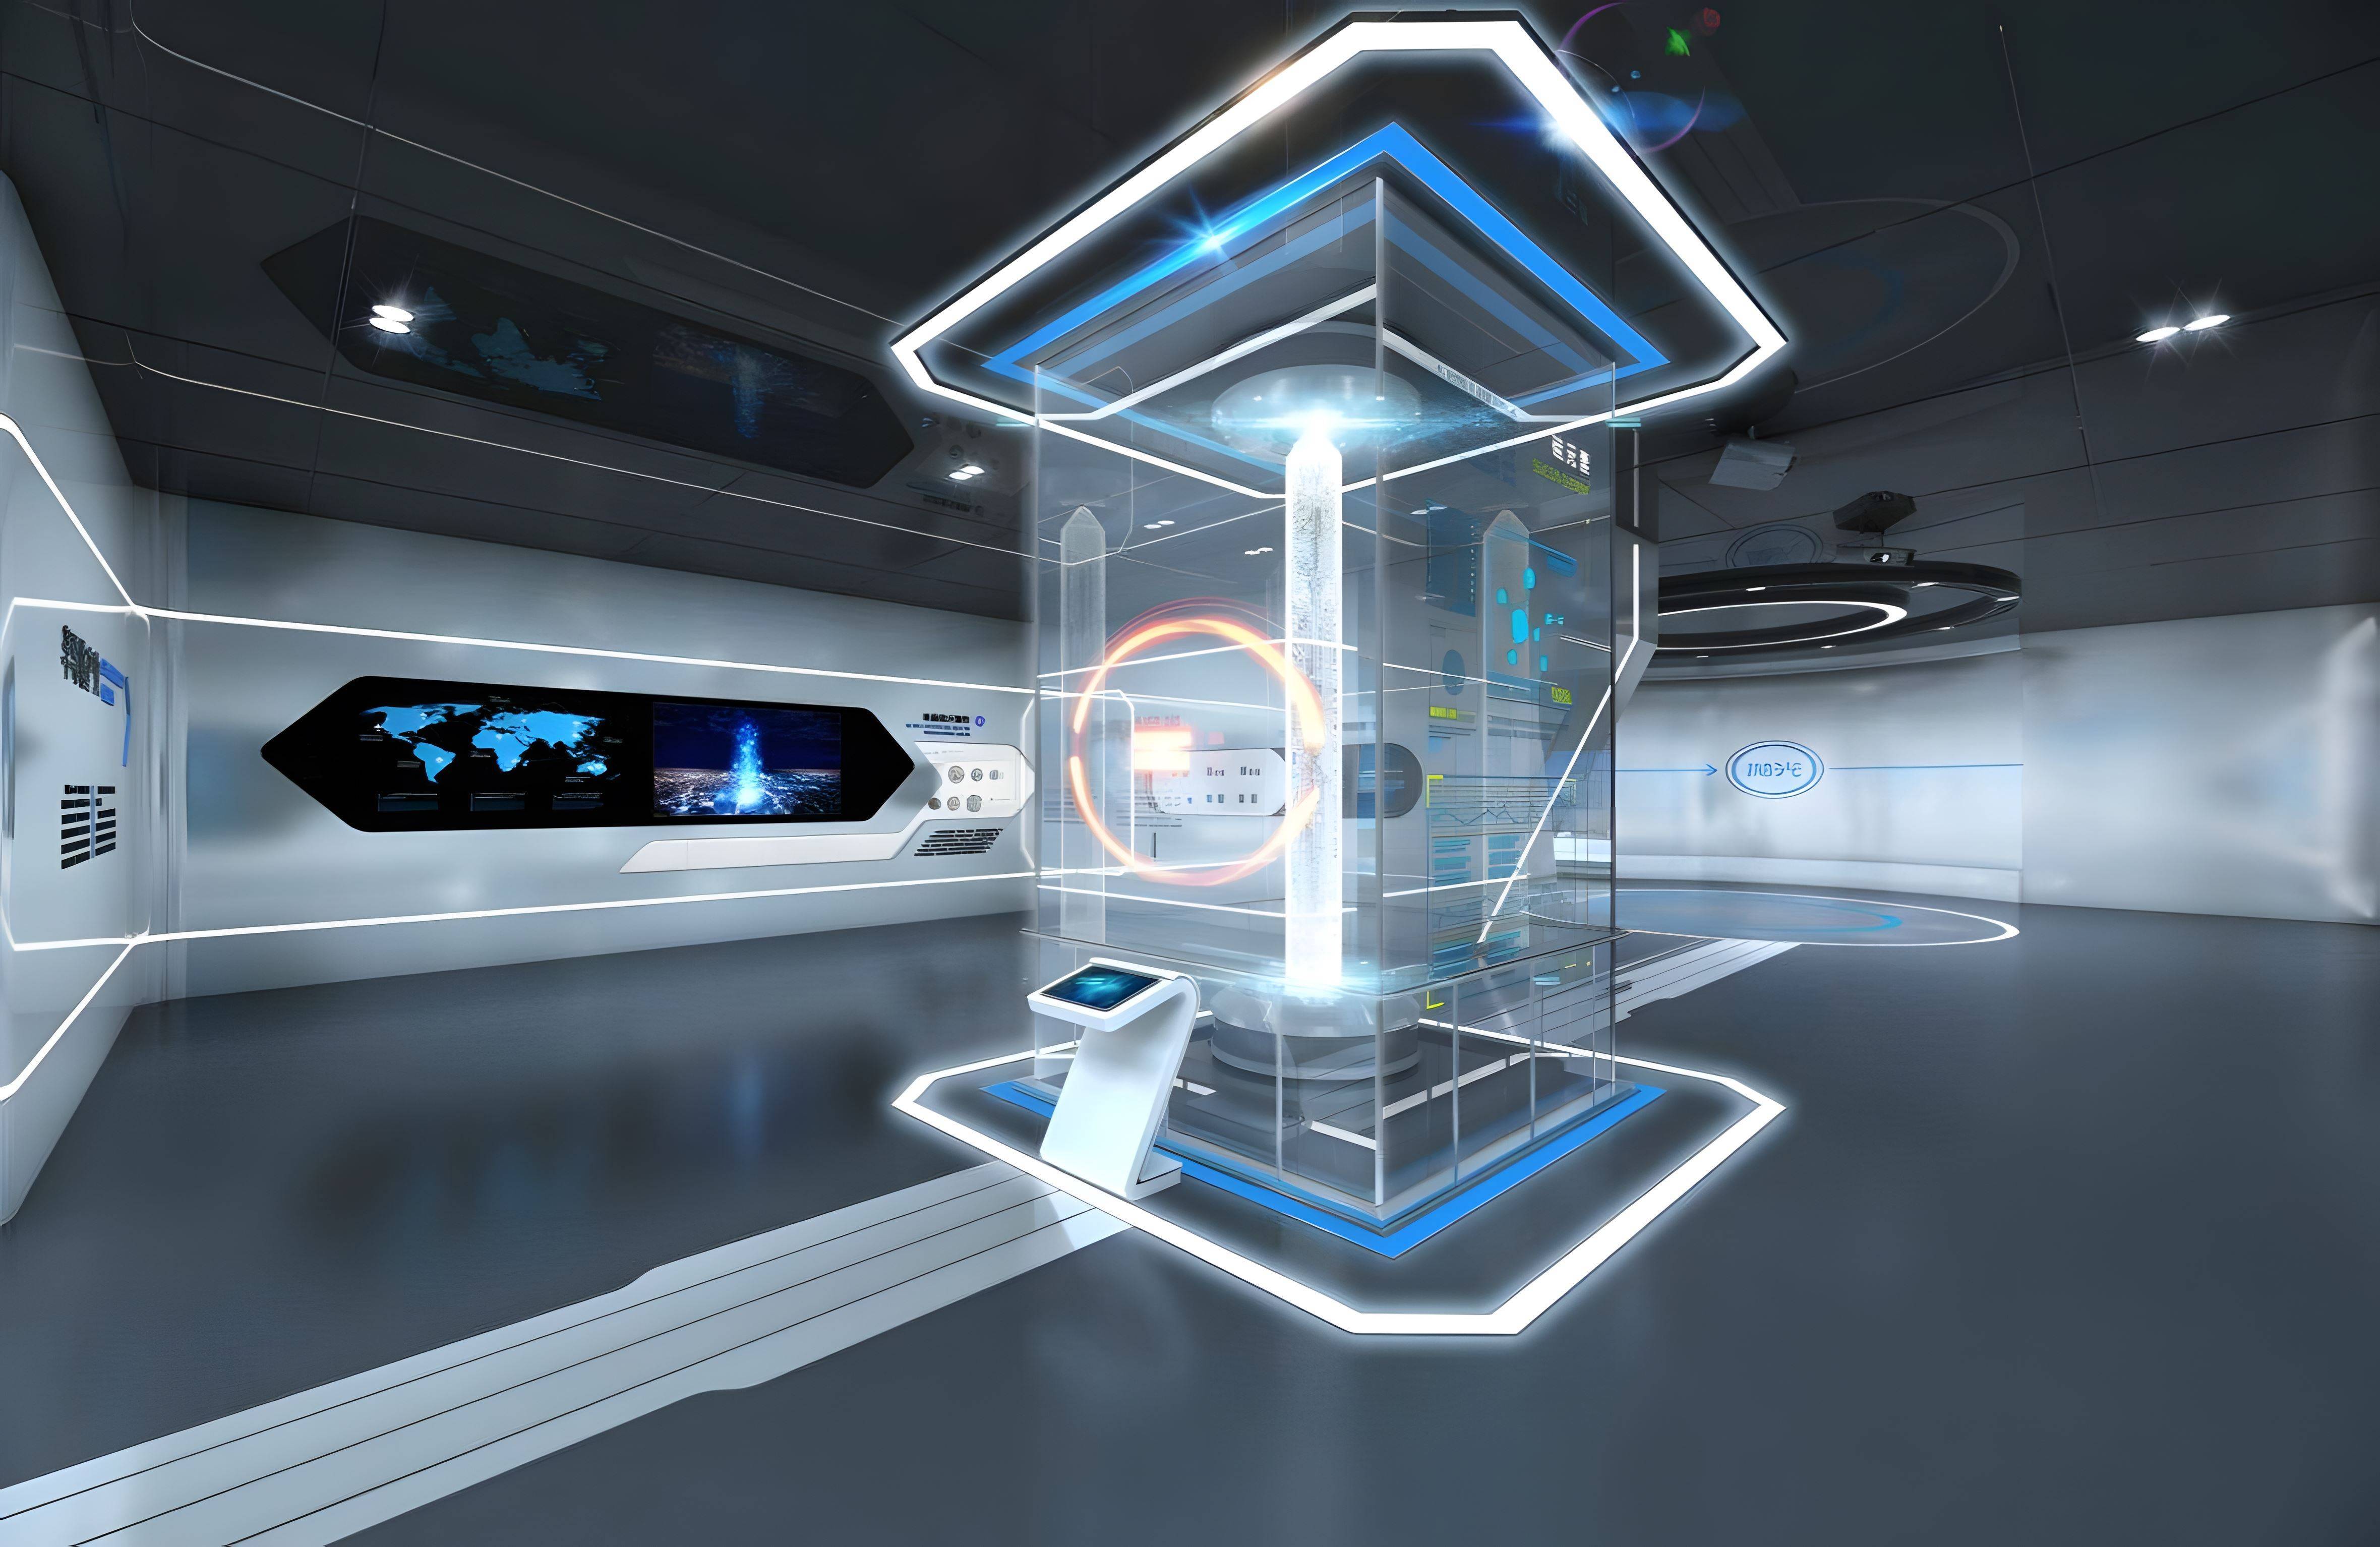 这是一张展示未来高科技控制室的图片，内有透明显示屏和多个互动界面，整体风格现代且科幻。